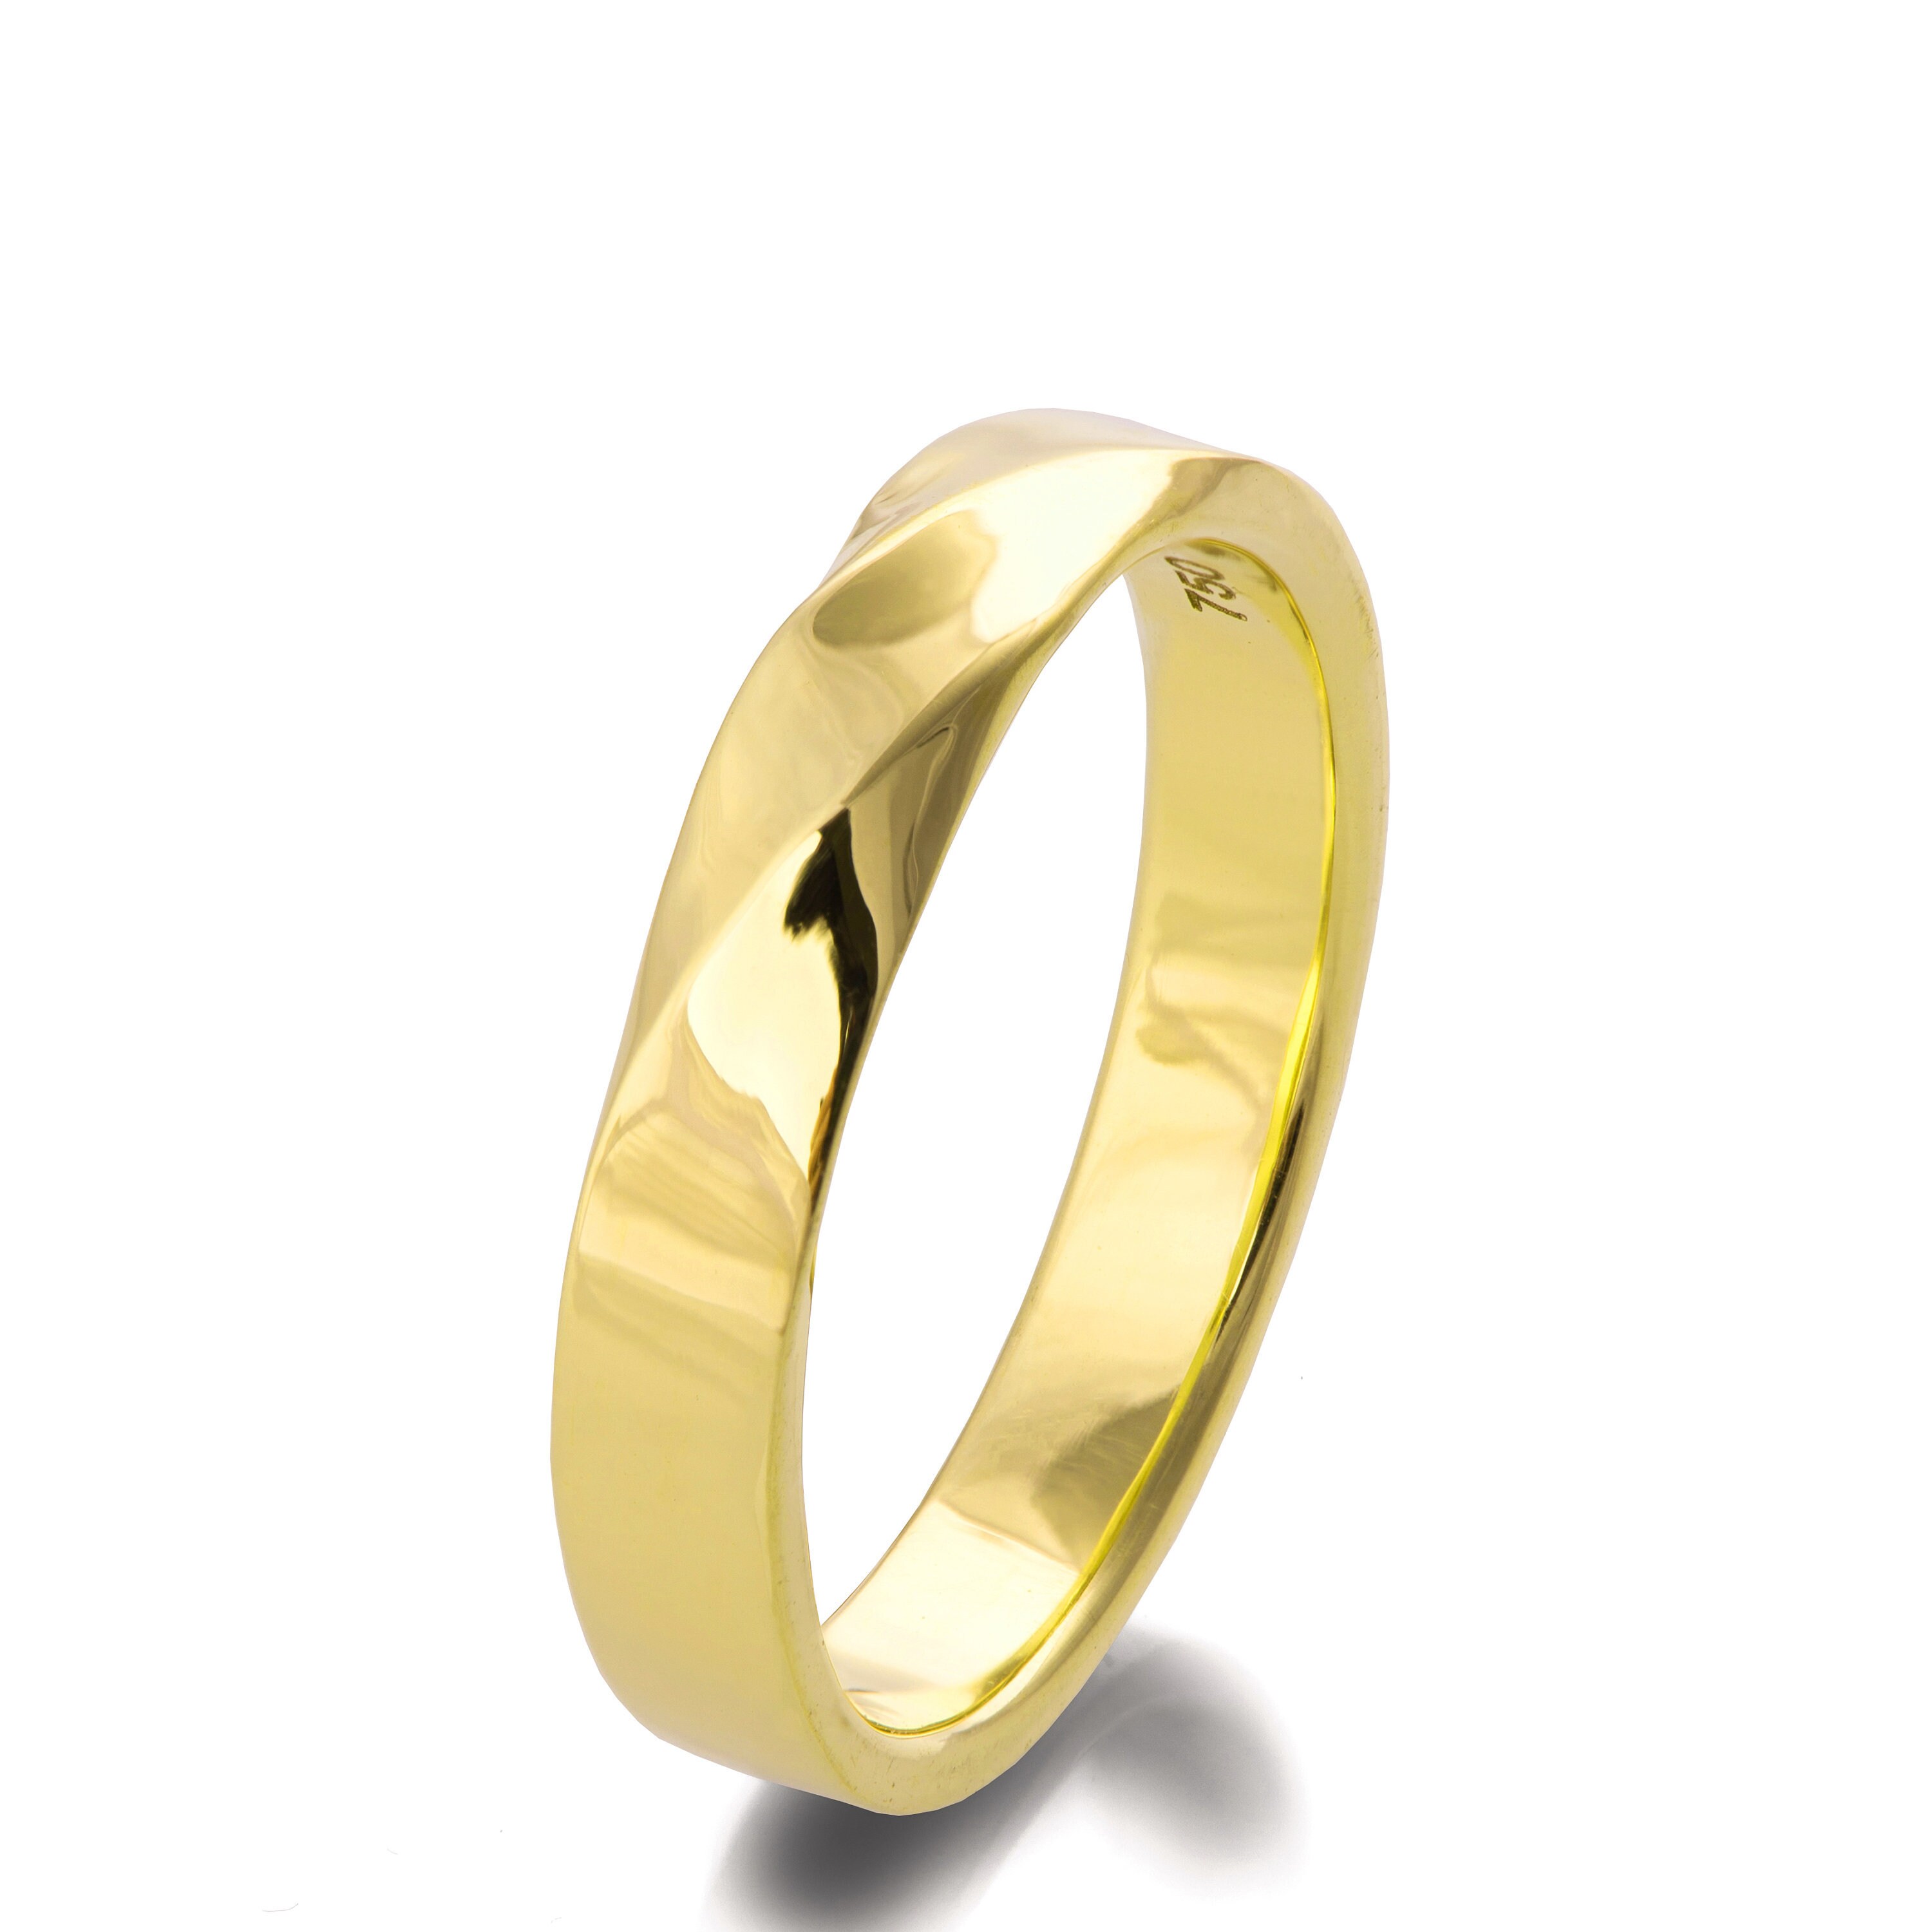 Mobius Ring 18k Gold Ring Wedding Ring Gold Wedding Ring | Etsy